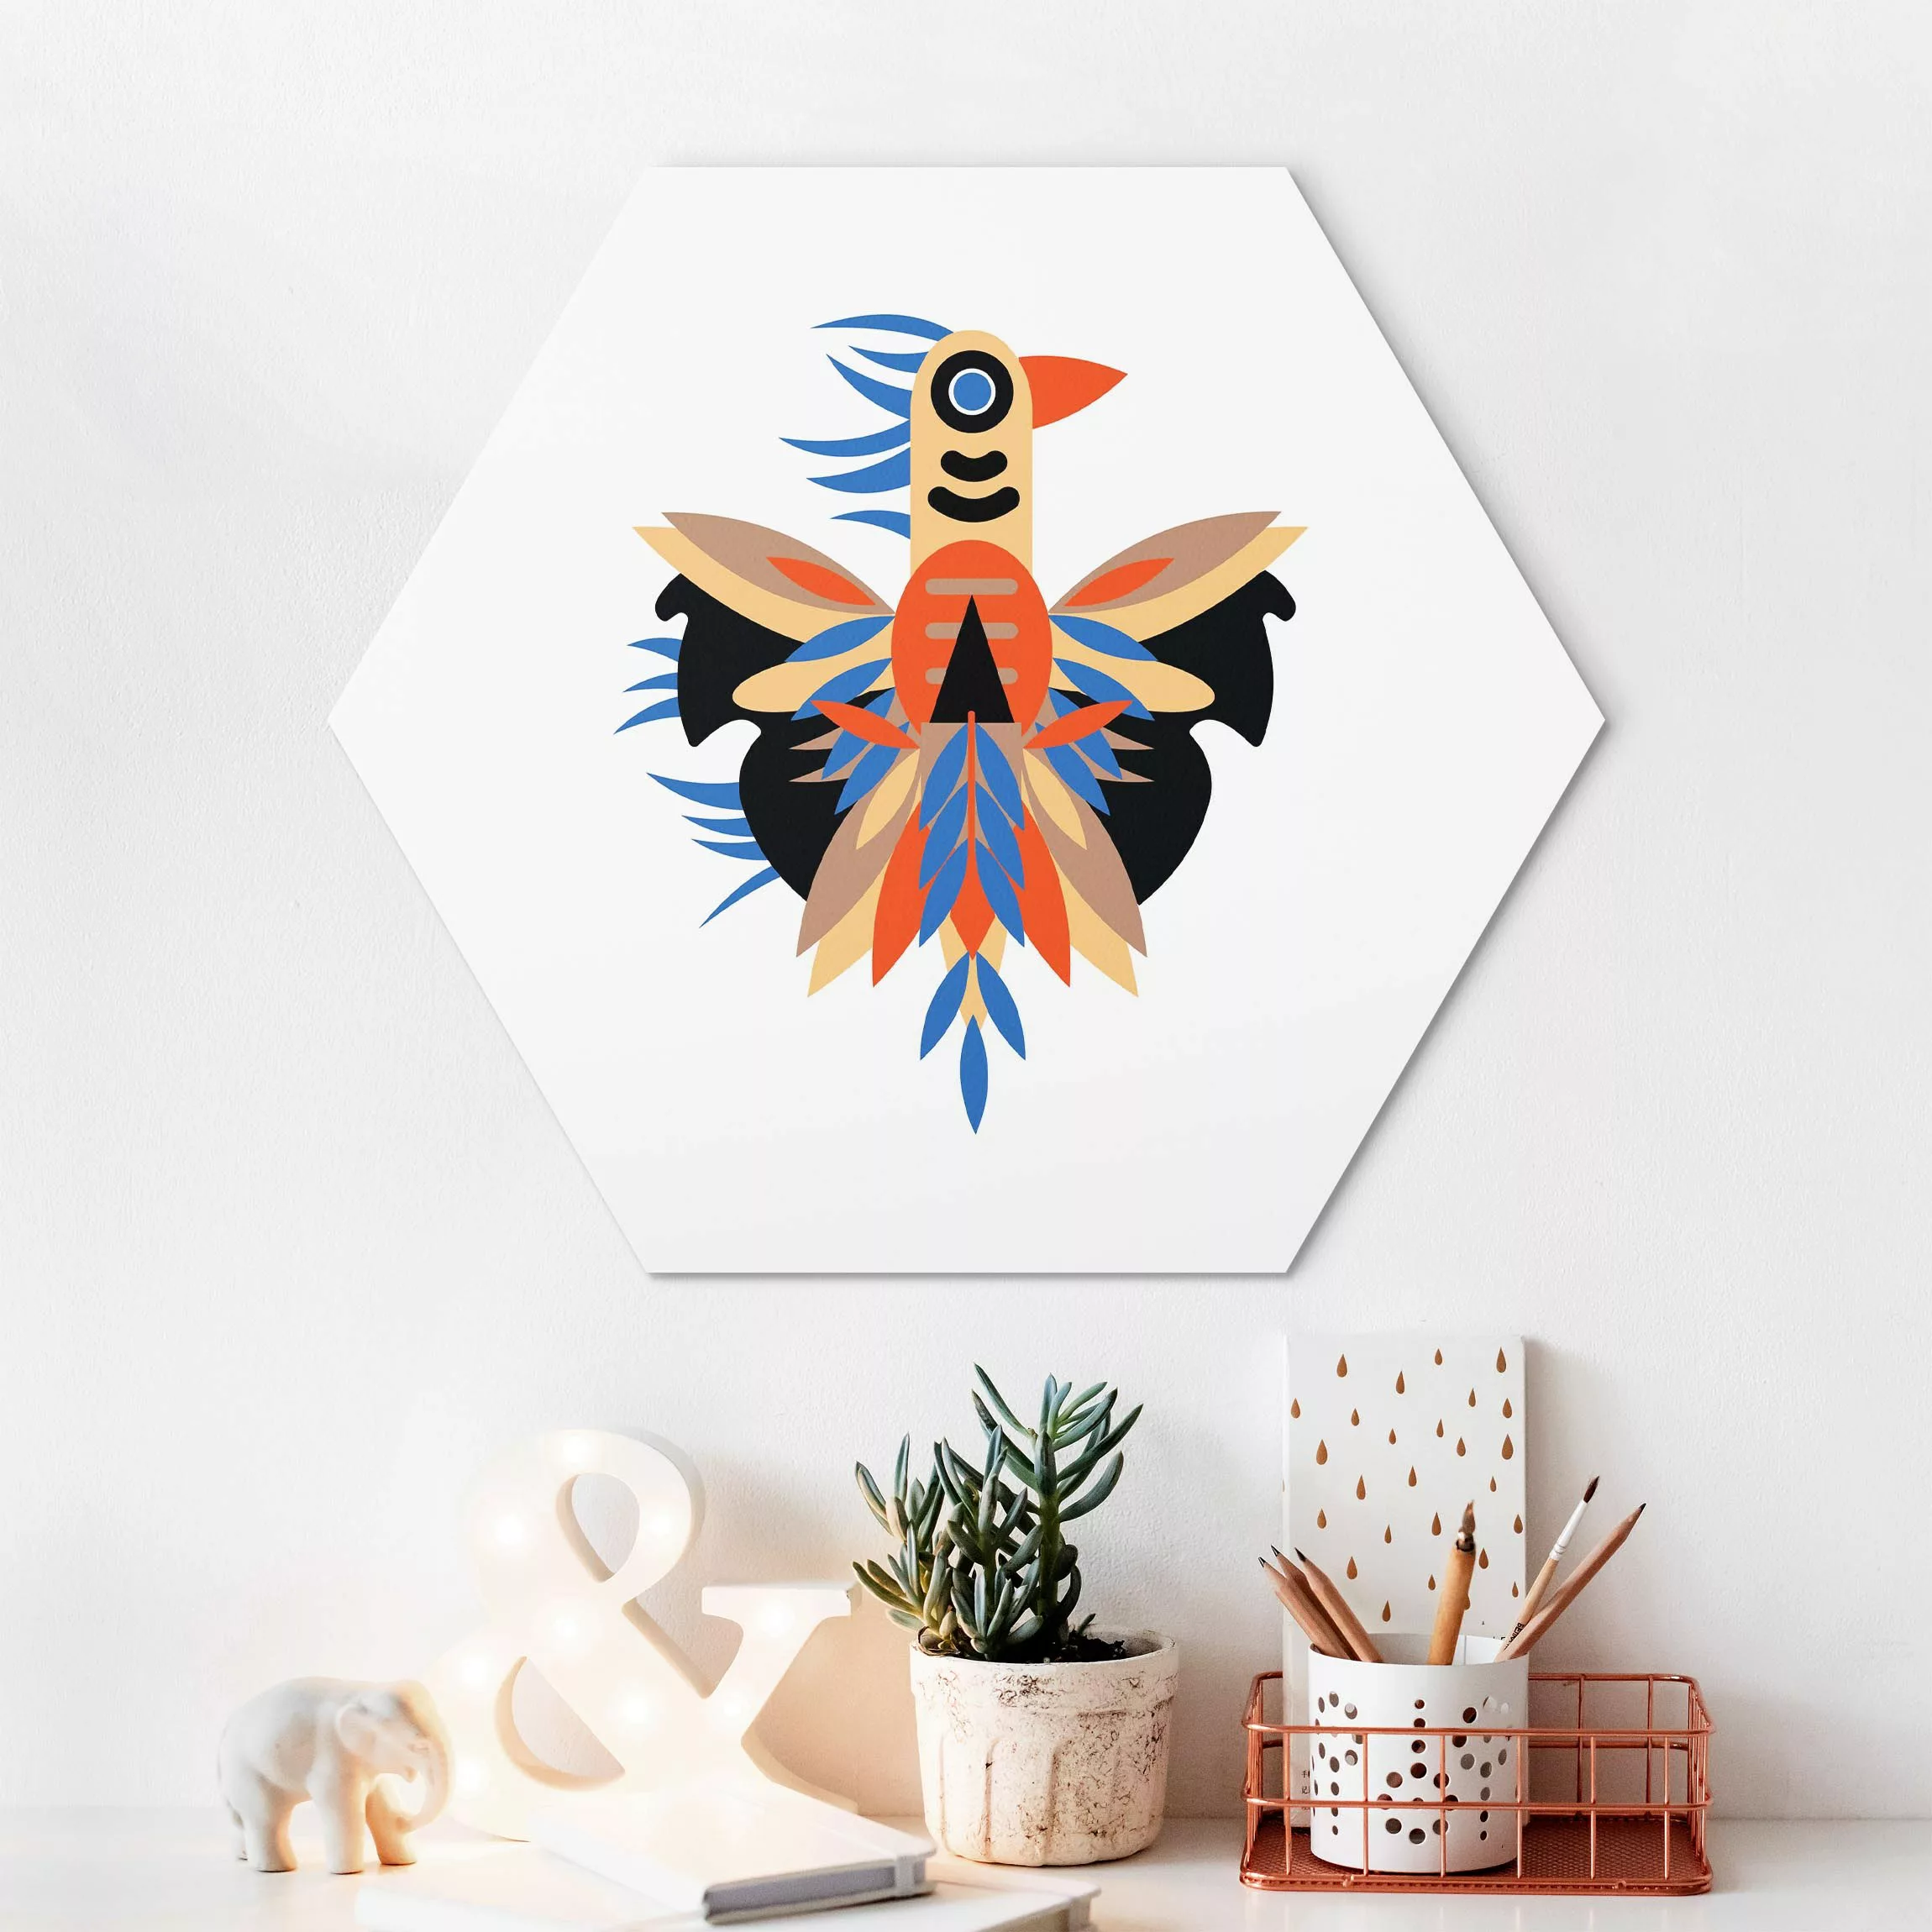 Hexagon-Alu-Dibond Bild Collage Ethno Monster - Federn günstig online kaufen